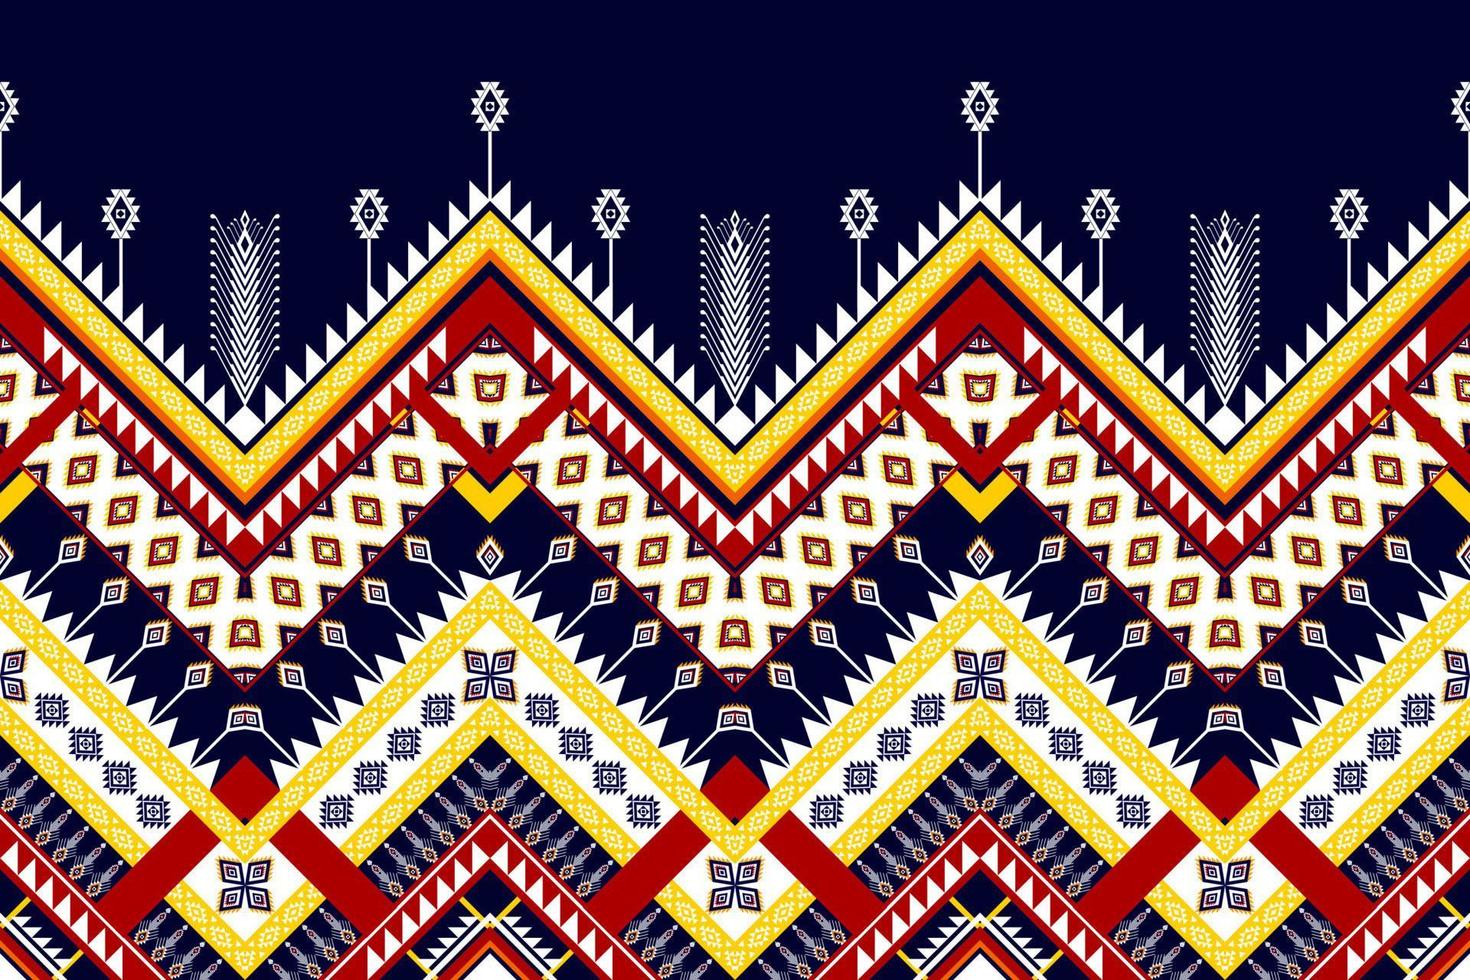 abstract geometrisch etnisch patroonontwerp. Azteekse stof tapijt mandala ornament etnische chevron textiel decoratie behang. tribal boho inheemse etnische traditionele borduurwerk vector achtergrond